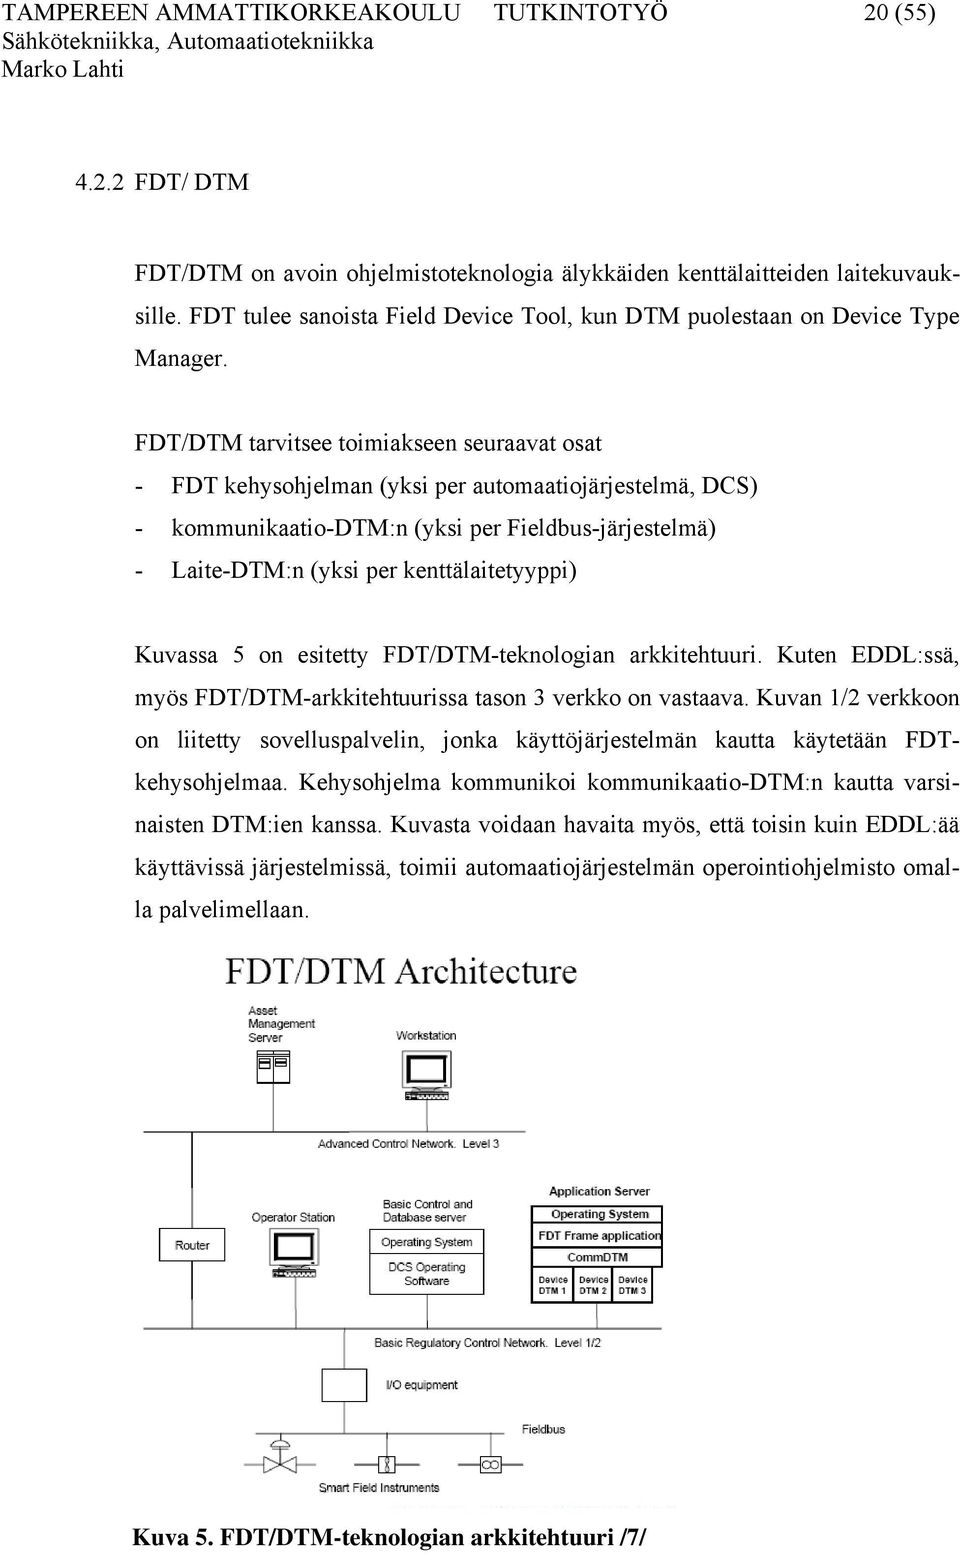 FDT/DTM tarvitsee toimiakseen seuraavat osat - FDT kehysohjelman (yksi per automaatiojärjestelmä, DCS) - kommunikaatio-dtm:n (yksi per Fieldbus-järjestelmä) - Laite-DTM:n (yksi per kenttälaitetyyppi)